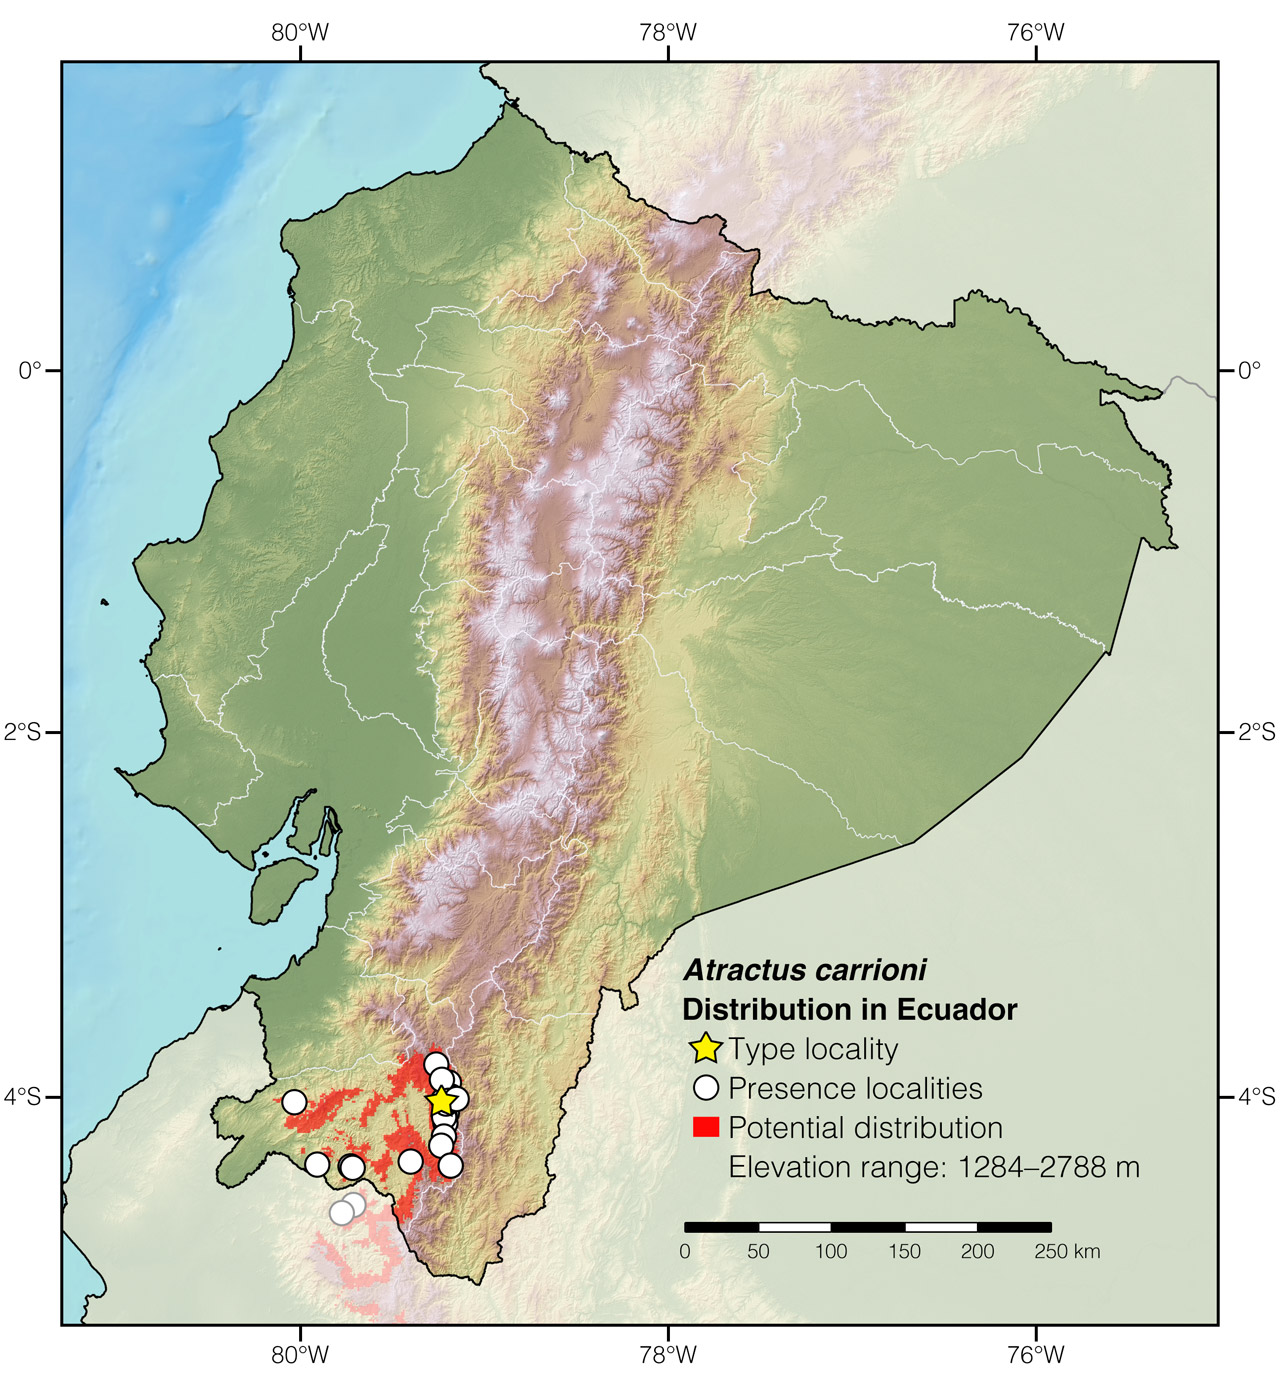 Distribution of Atractus carrioni in Ecuador